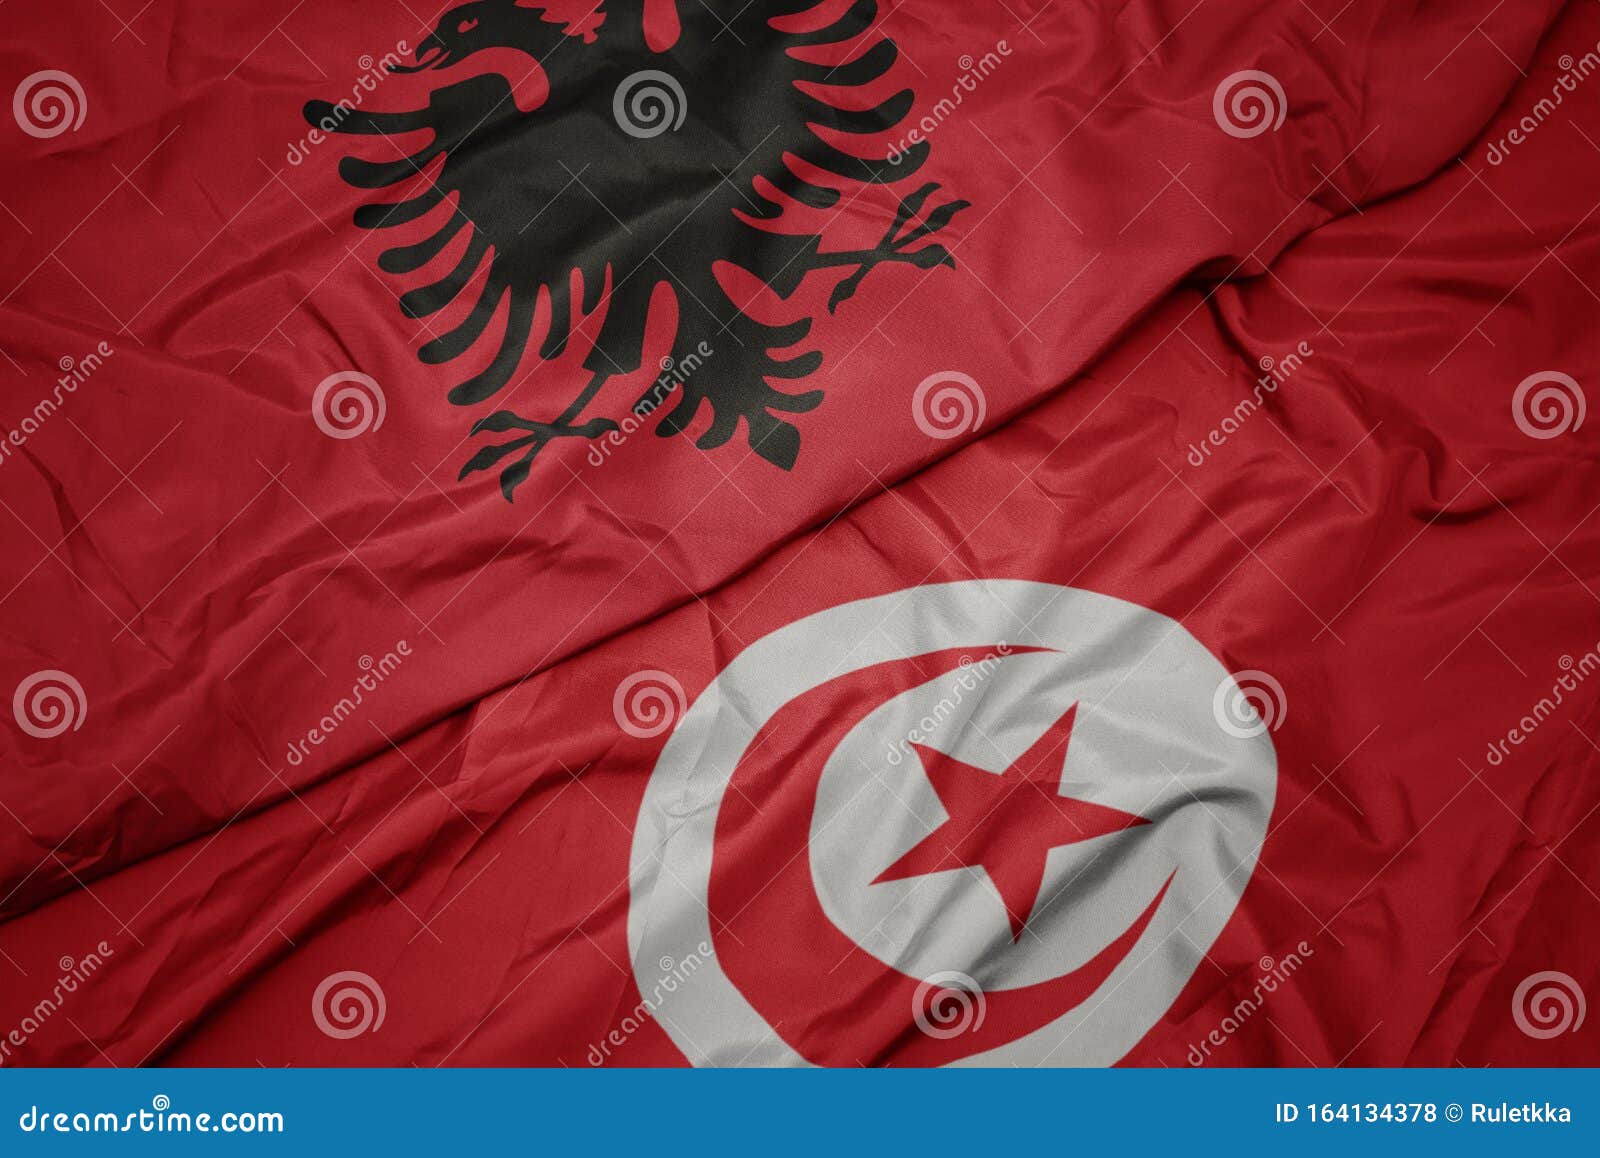 Drapeau Coloré De La Tunisie Et Drapeau National De L'albanie